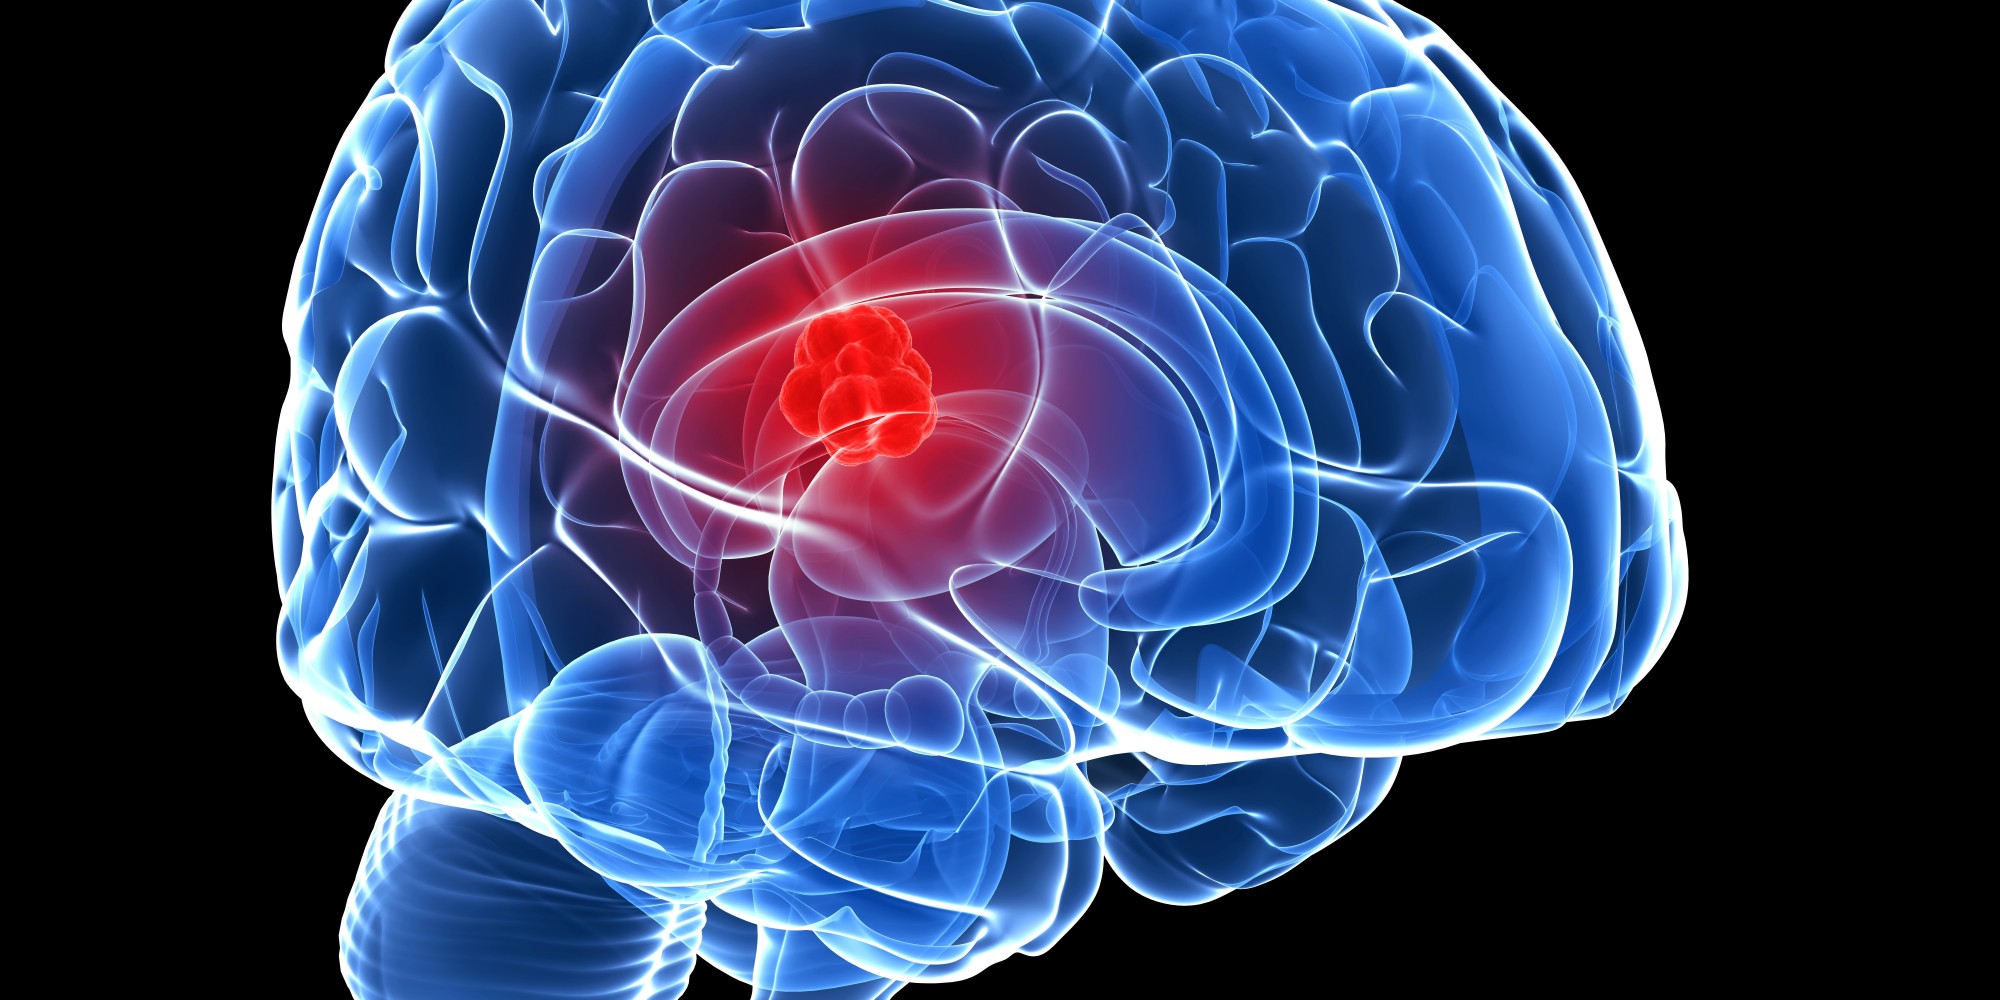 حقن الخلايا المناعية في المخ يشفي من اورام المخ